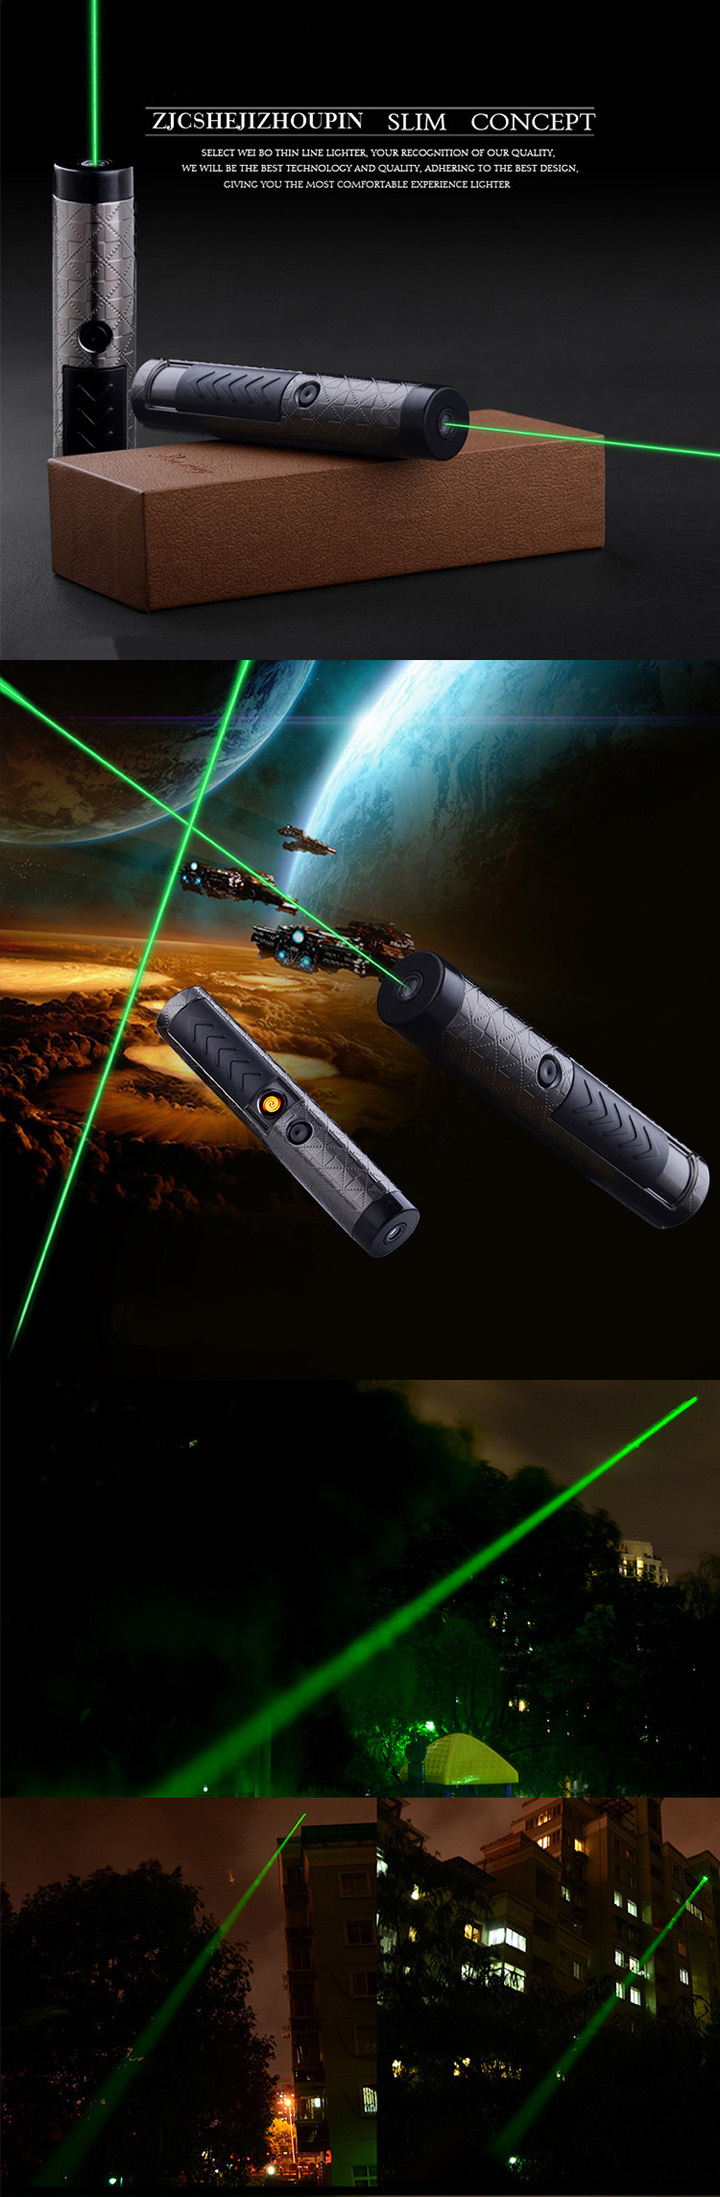 aansteker met groene laser